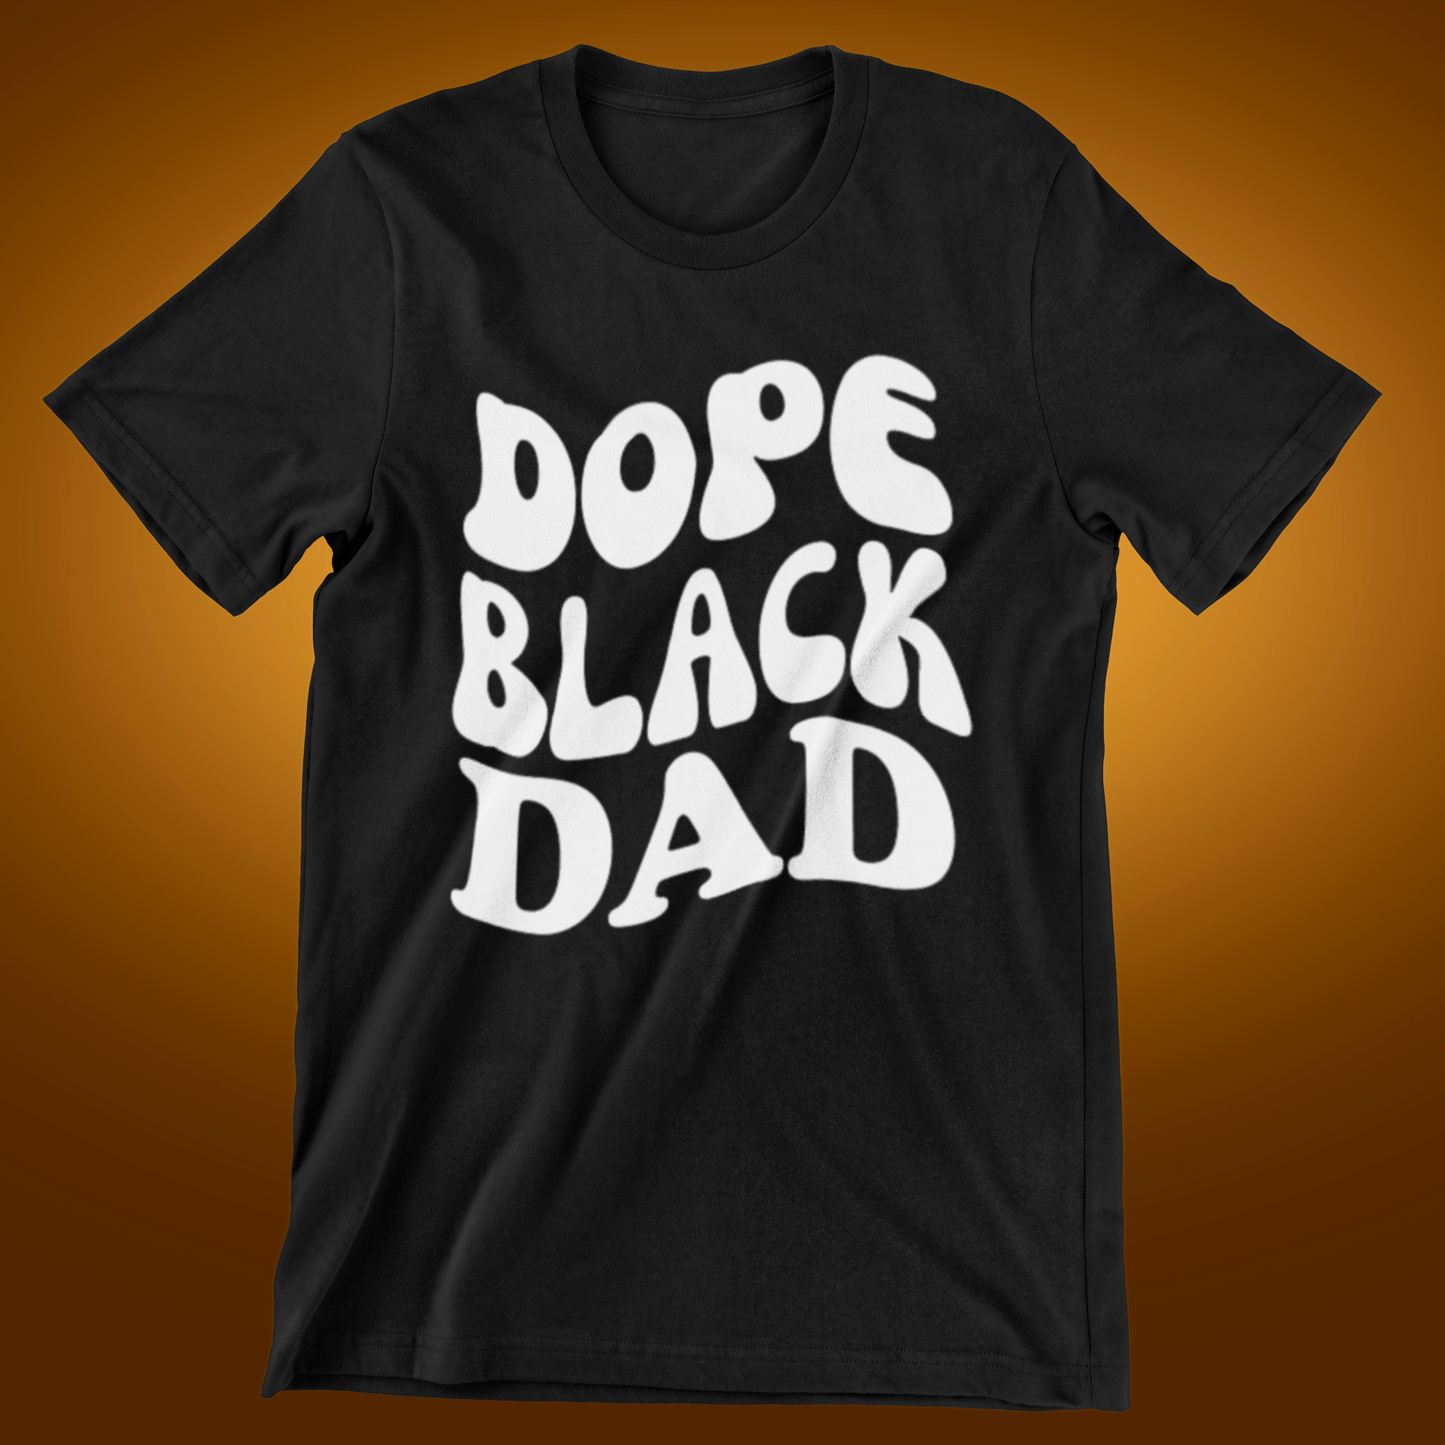 Dope Black Dad tee